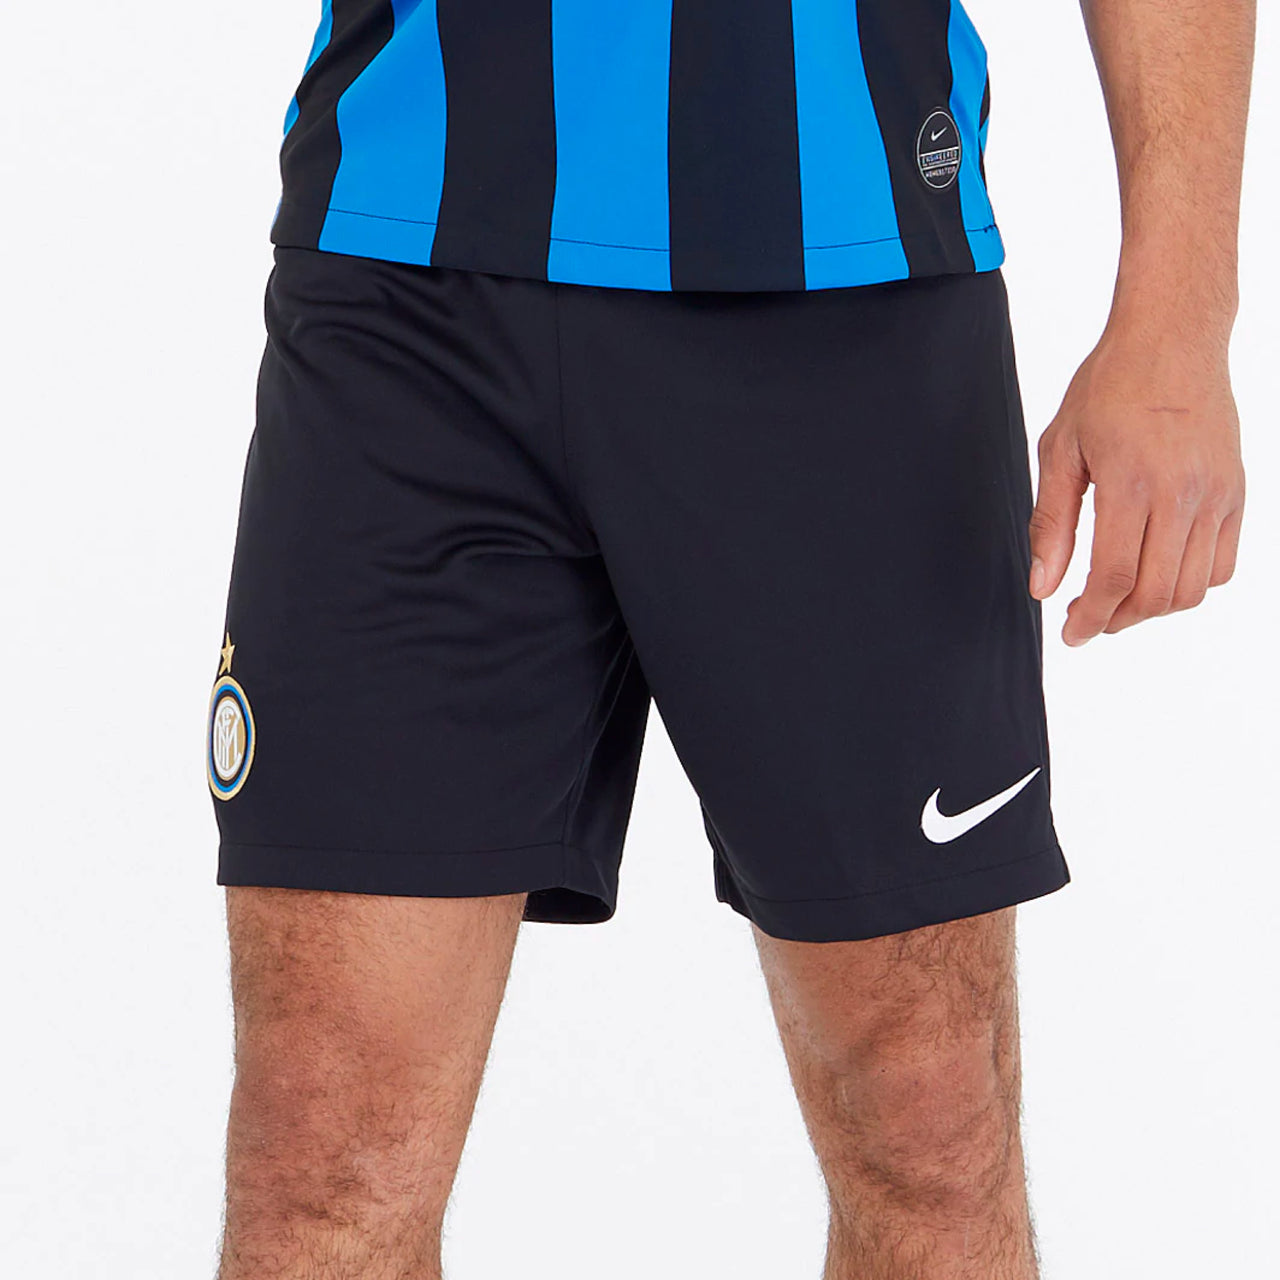 Inter Milan home short season 2019/20 - Mitani Store